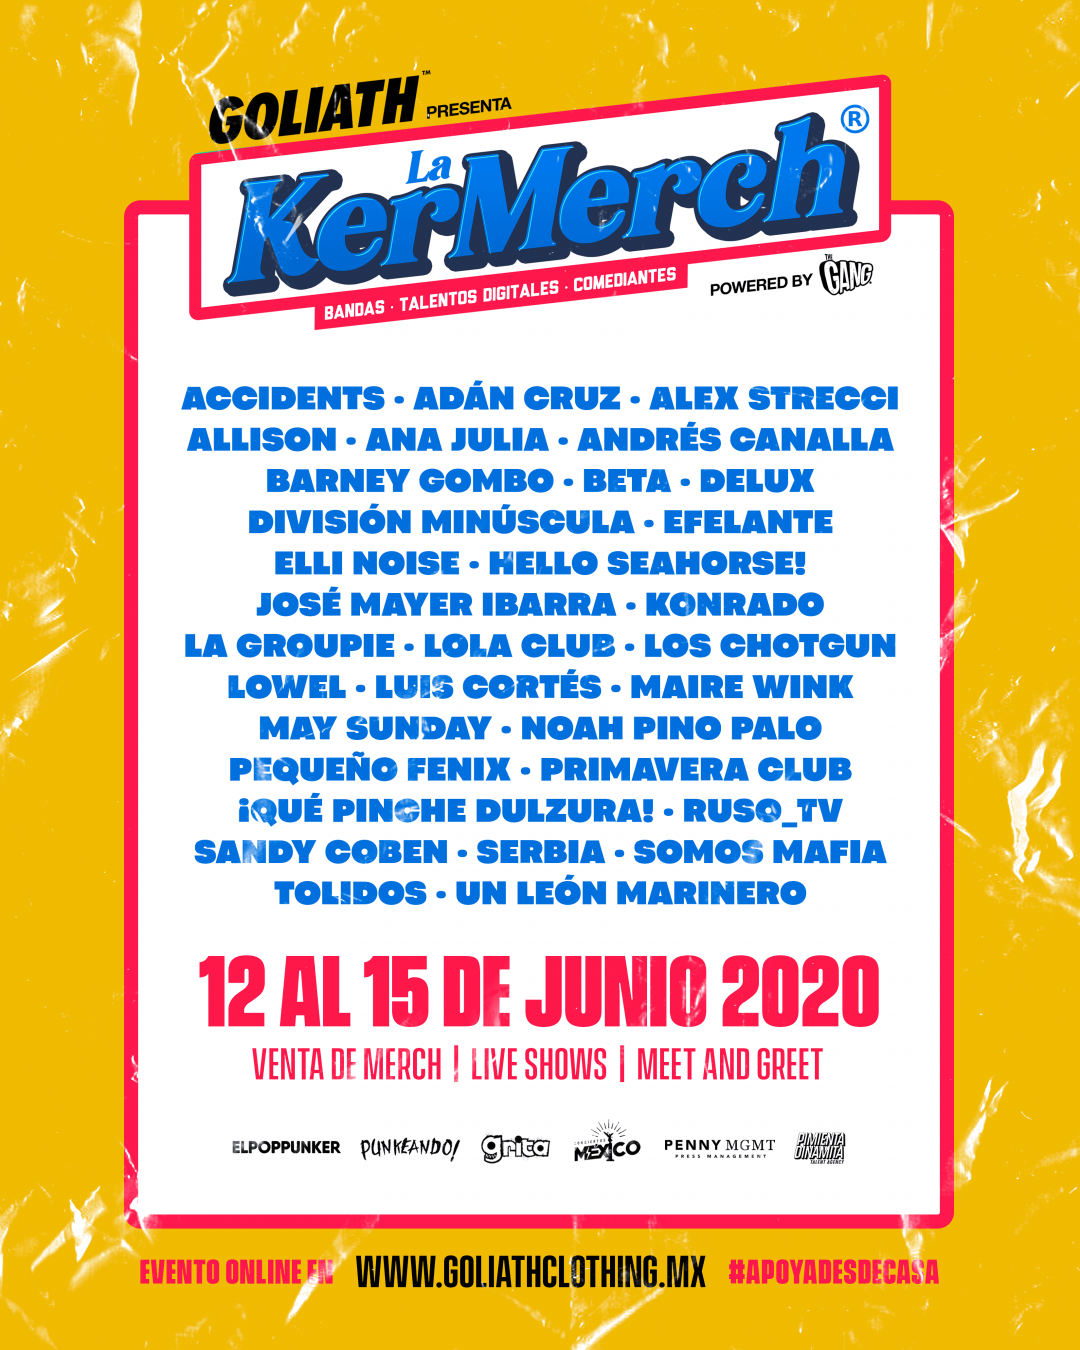 La KerMerch venta de mercancía, live shows, meet and greet y más